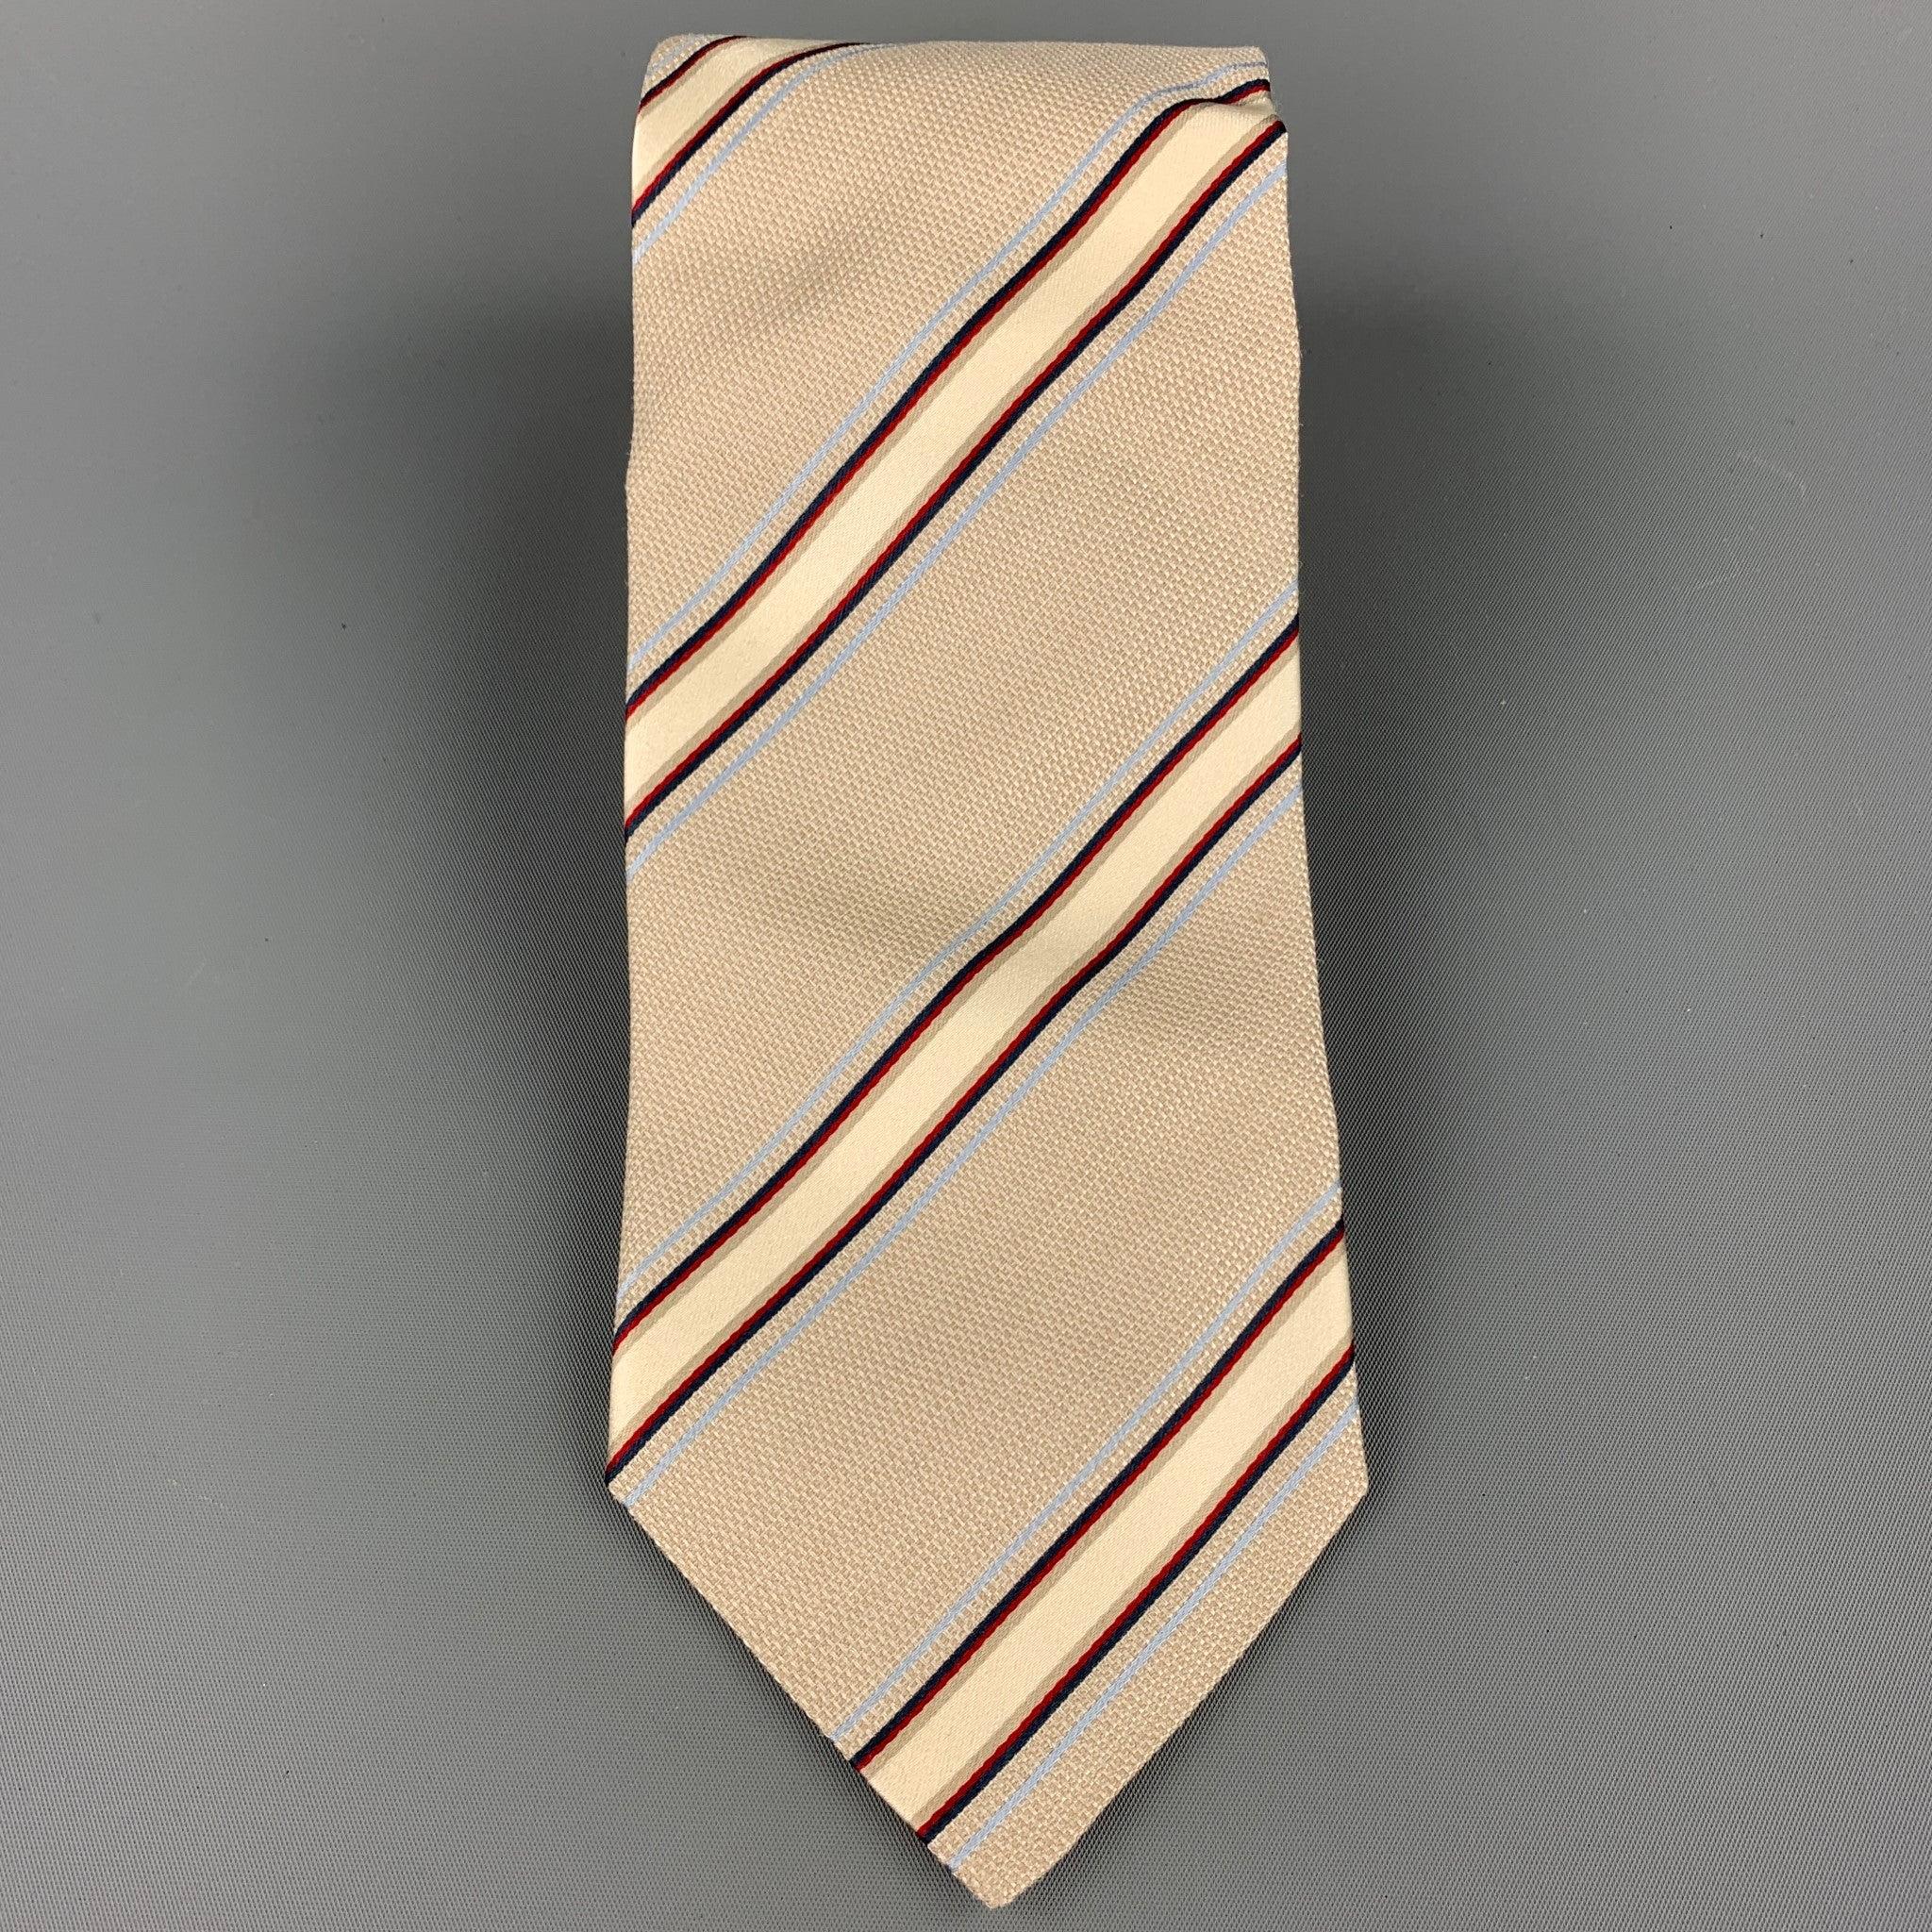 La cravate ERMENEGILDO Zegna est en soie à rayures diagonales beige et marine. Fabriqué en Italie.Très bon état d'usage.Largeur : 4 pouces 
  
  
 
Référence : 107881
Catégorie : Cravate
Plus de détails
    
Marque :  ERMENEGILDO ZEGNA
Couleur : 